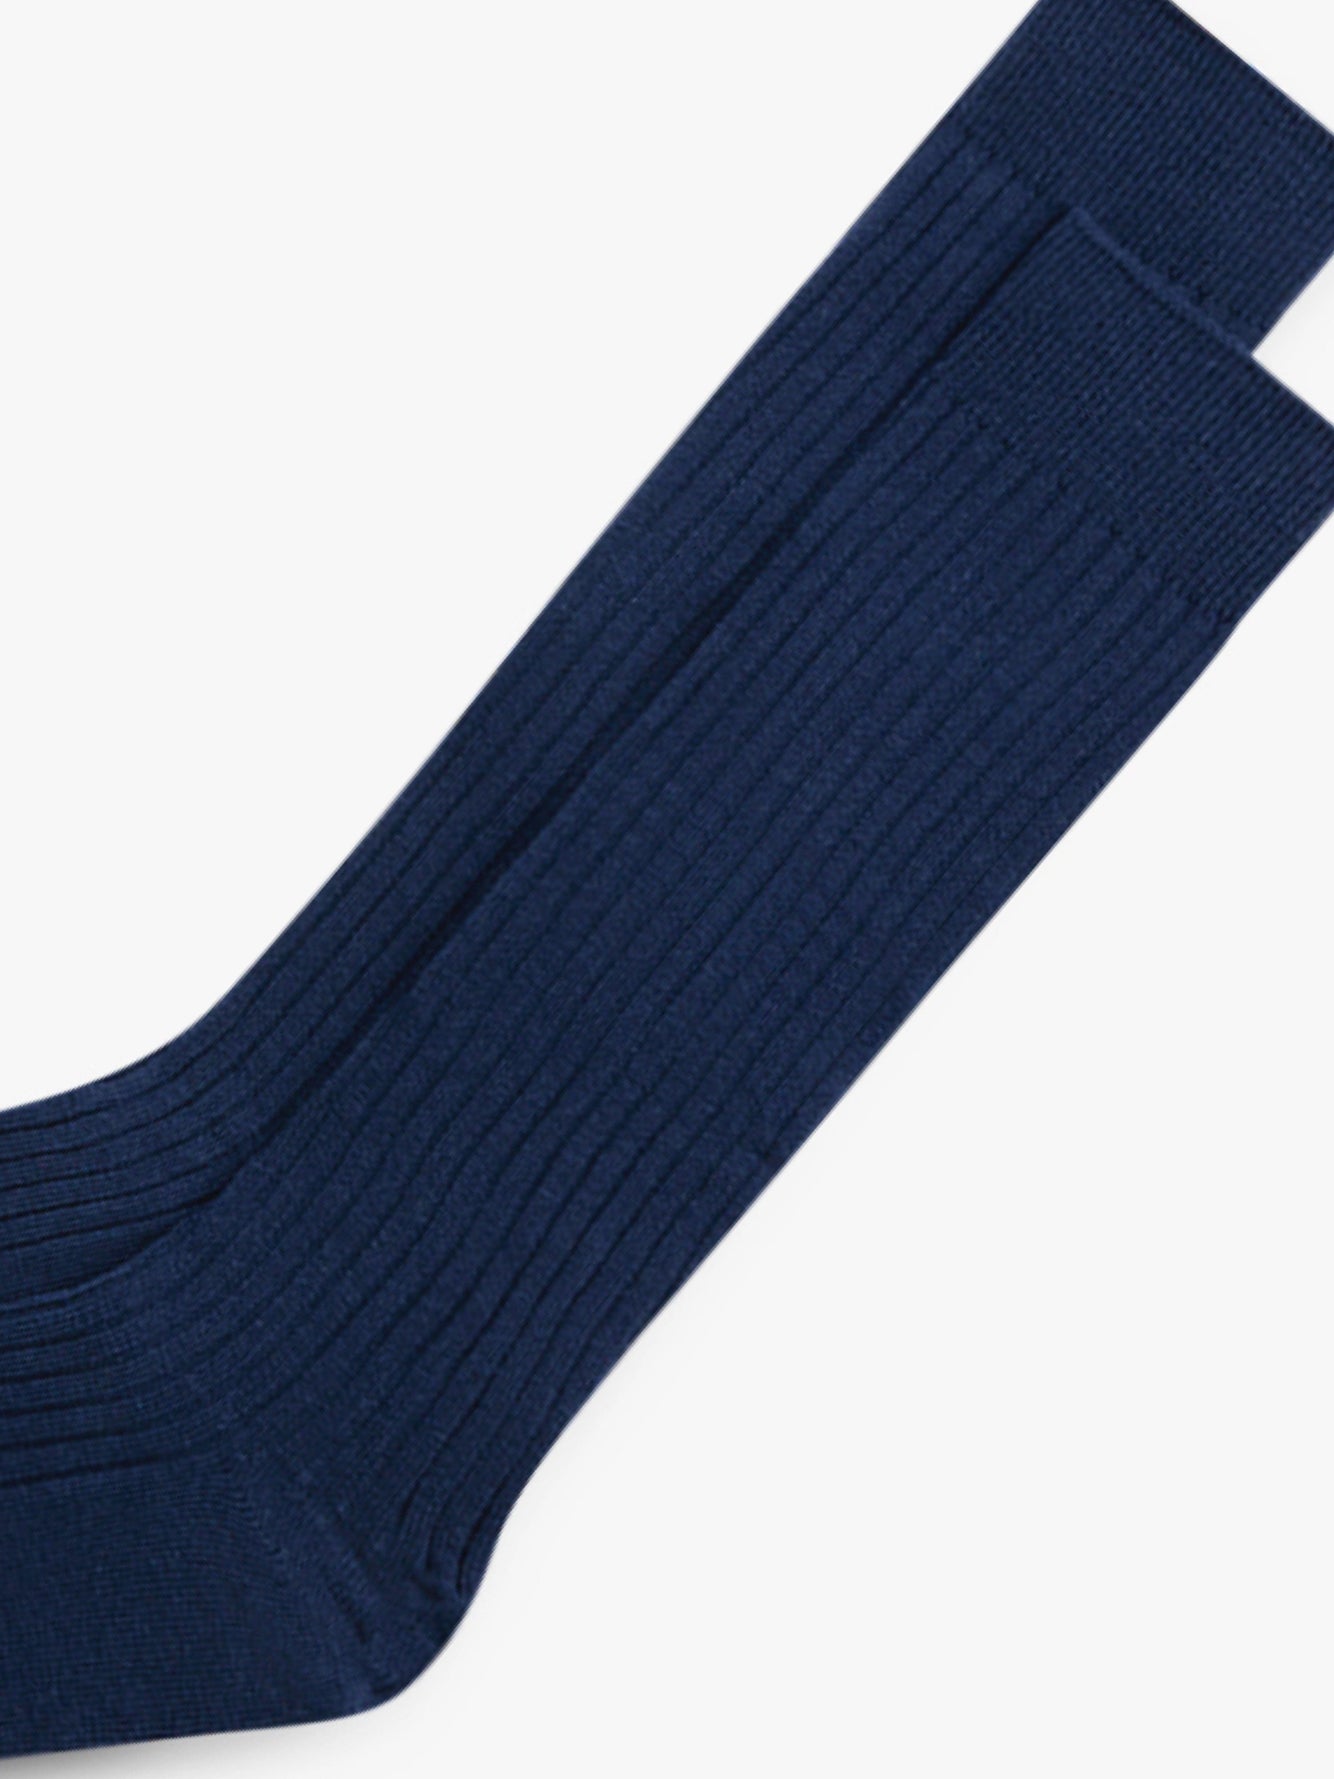 Grand Le Mar Socks Pima Navy Cotton - Ribbed